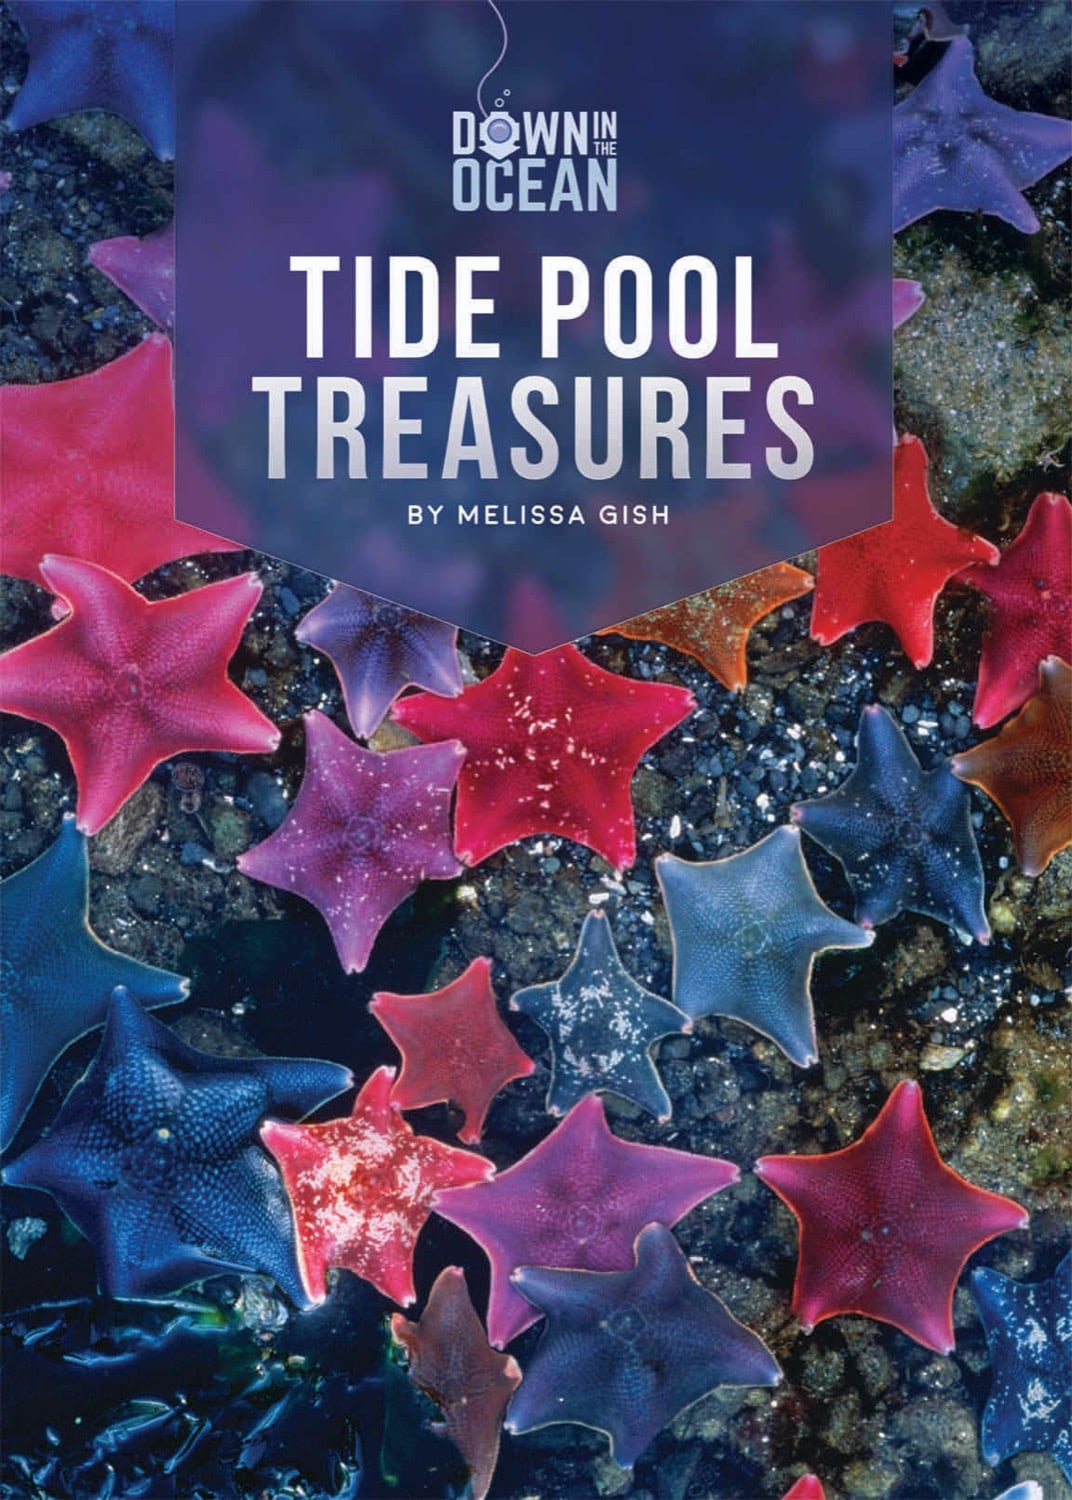 Down in the Ocean: Tide Pool Treasures